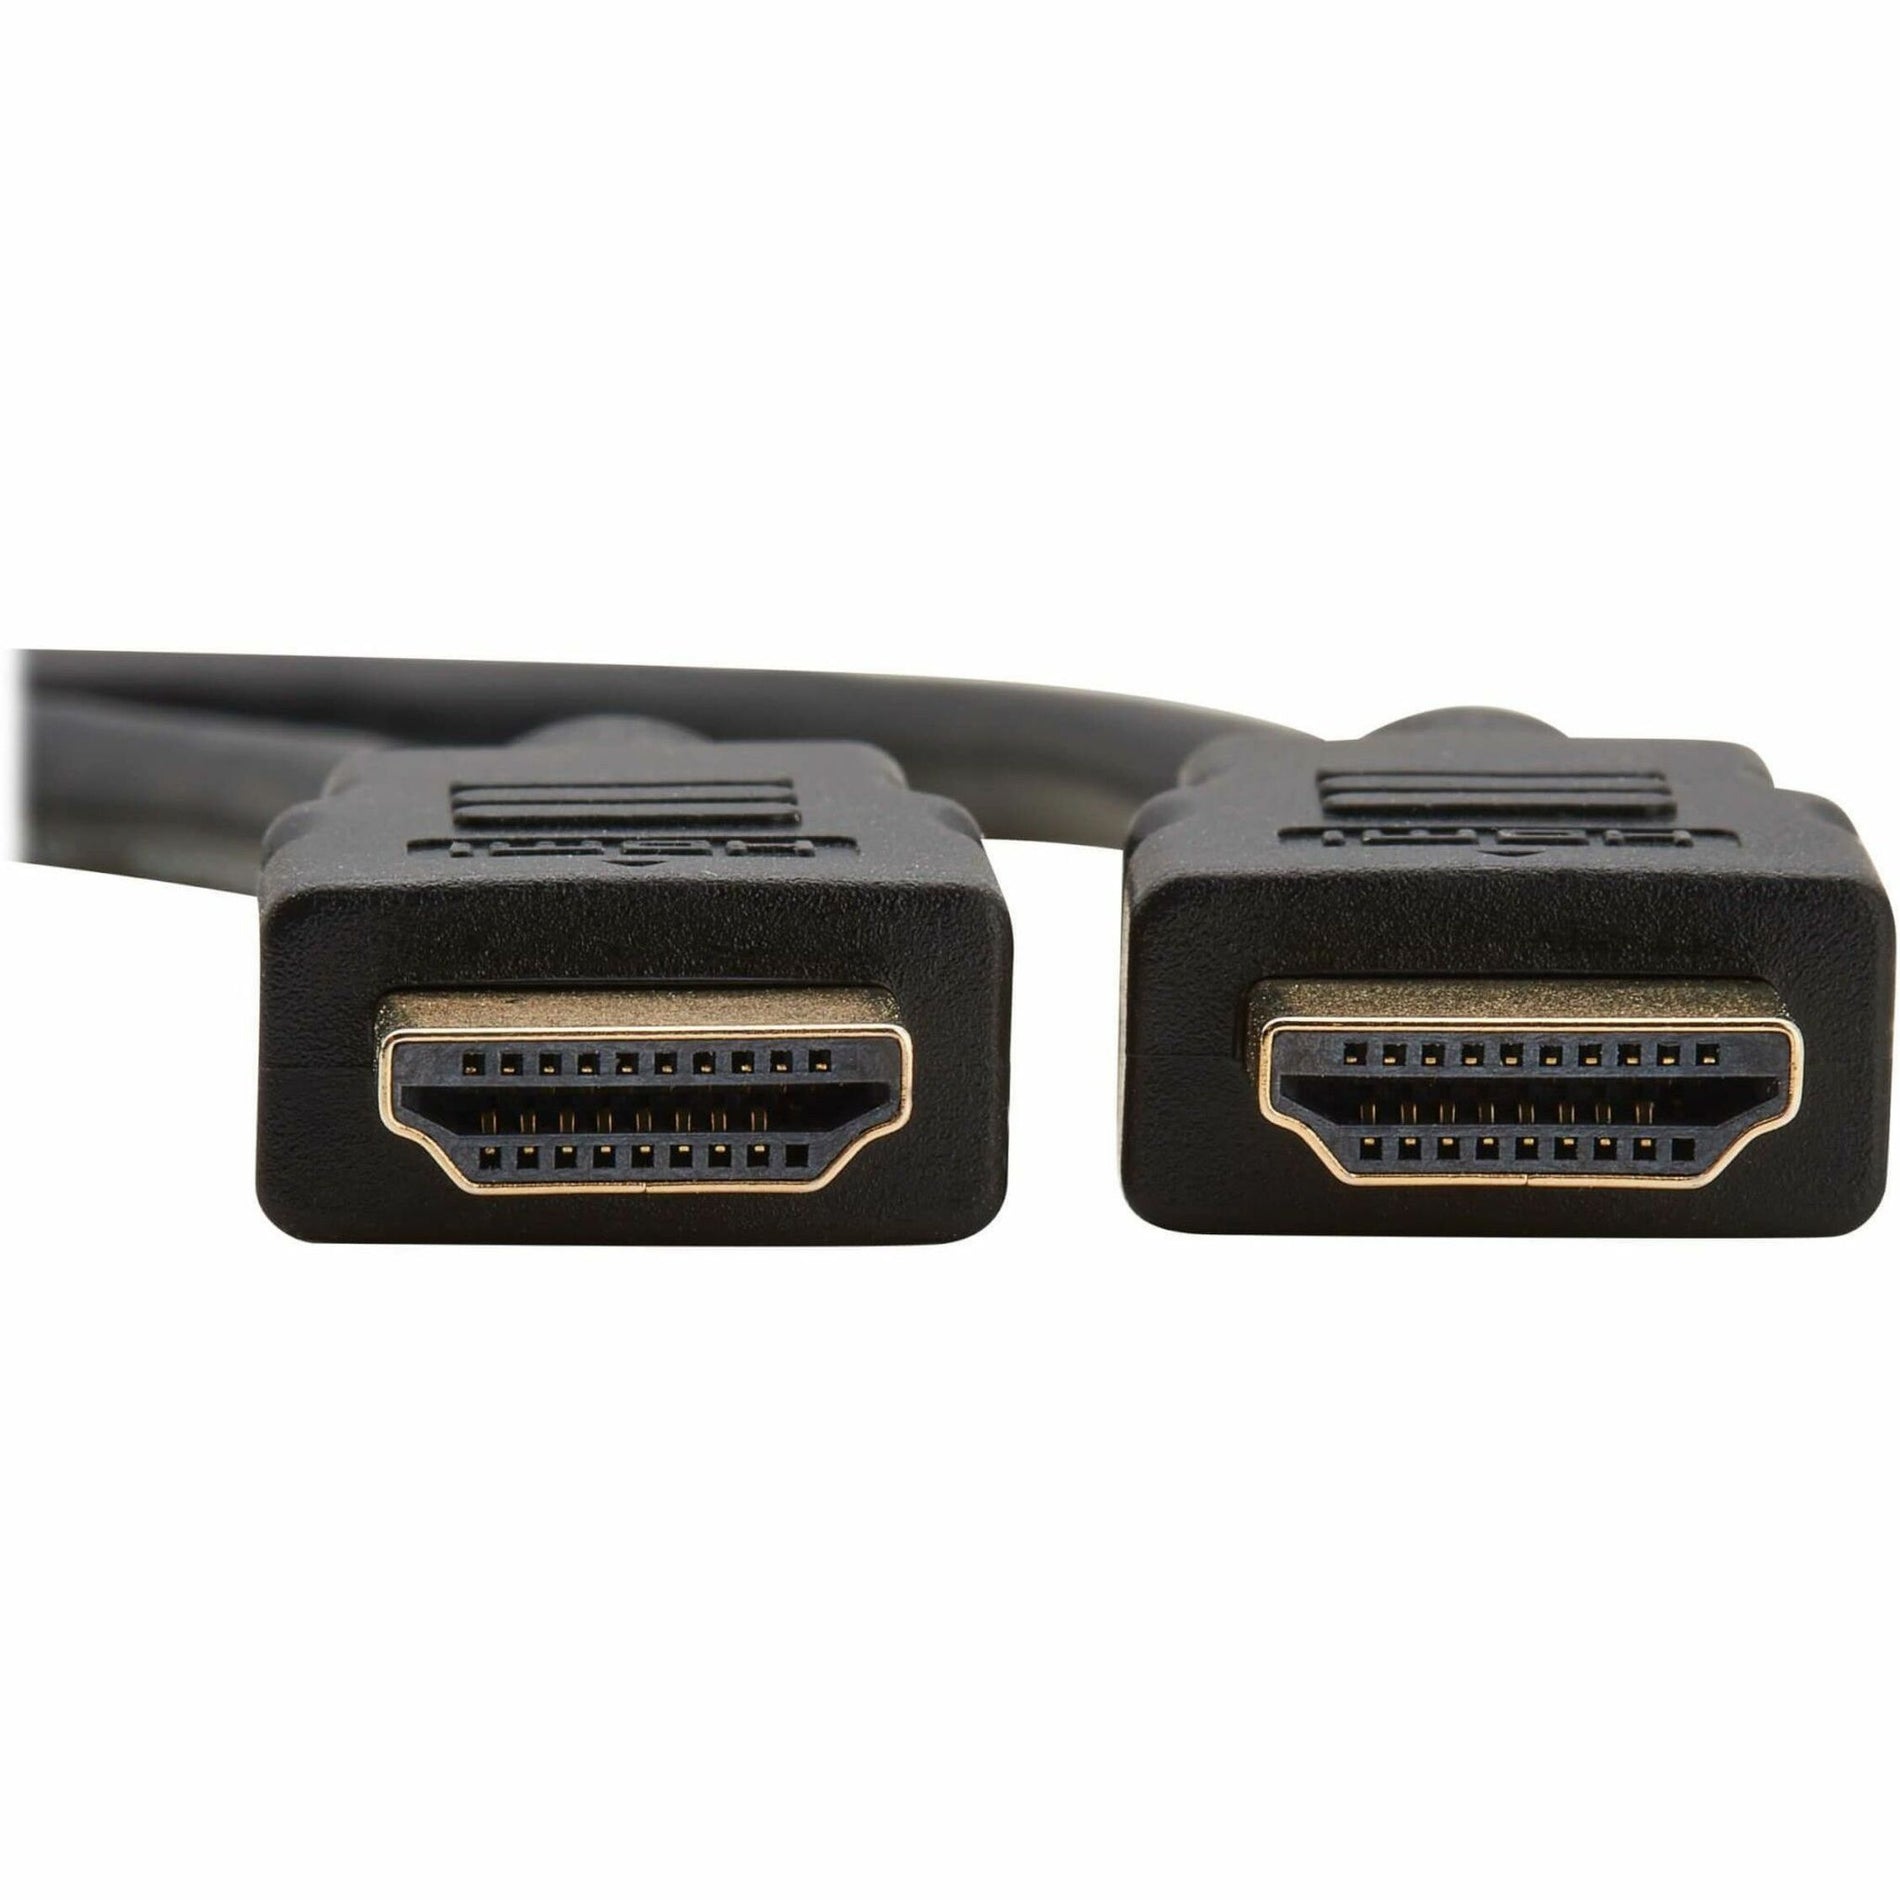 تريب لايت P568-030 كابل HDMI عالي السرعة ، فيديو رقمي مع صوت (ذكر / ذكر) ، 30 قدم ، موصل قبضة ، حماية EMI / RF تريب لايت